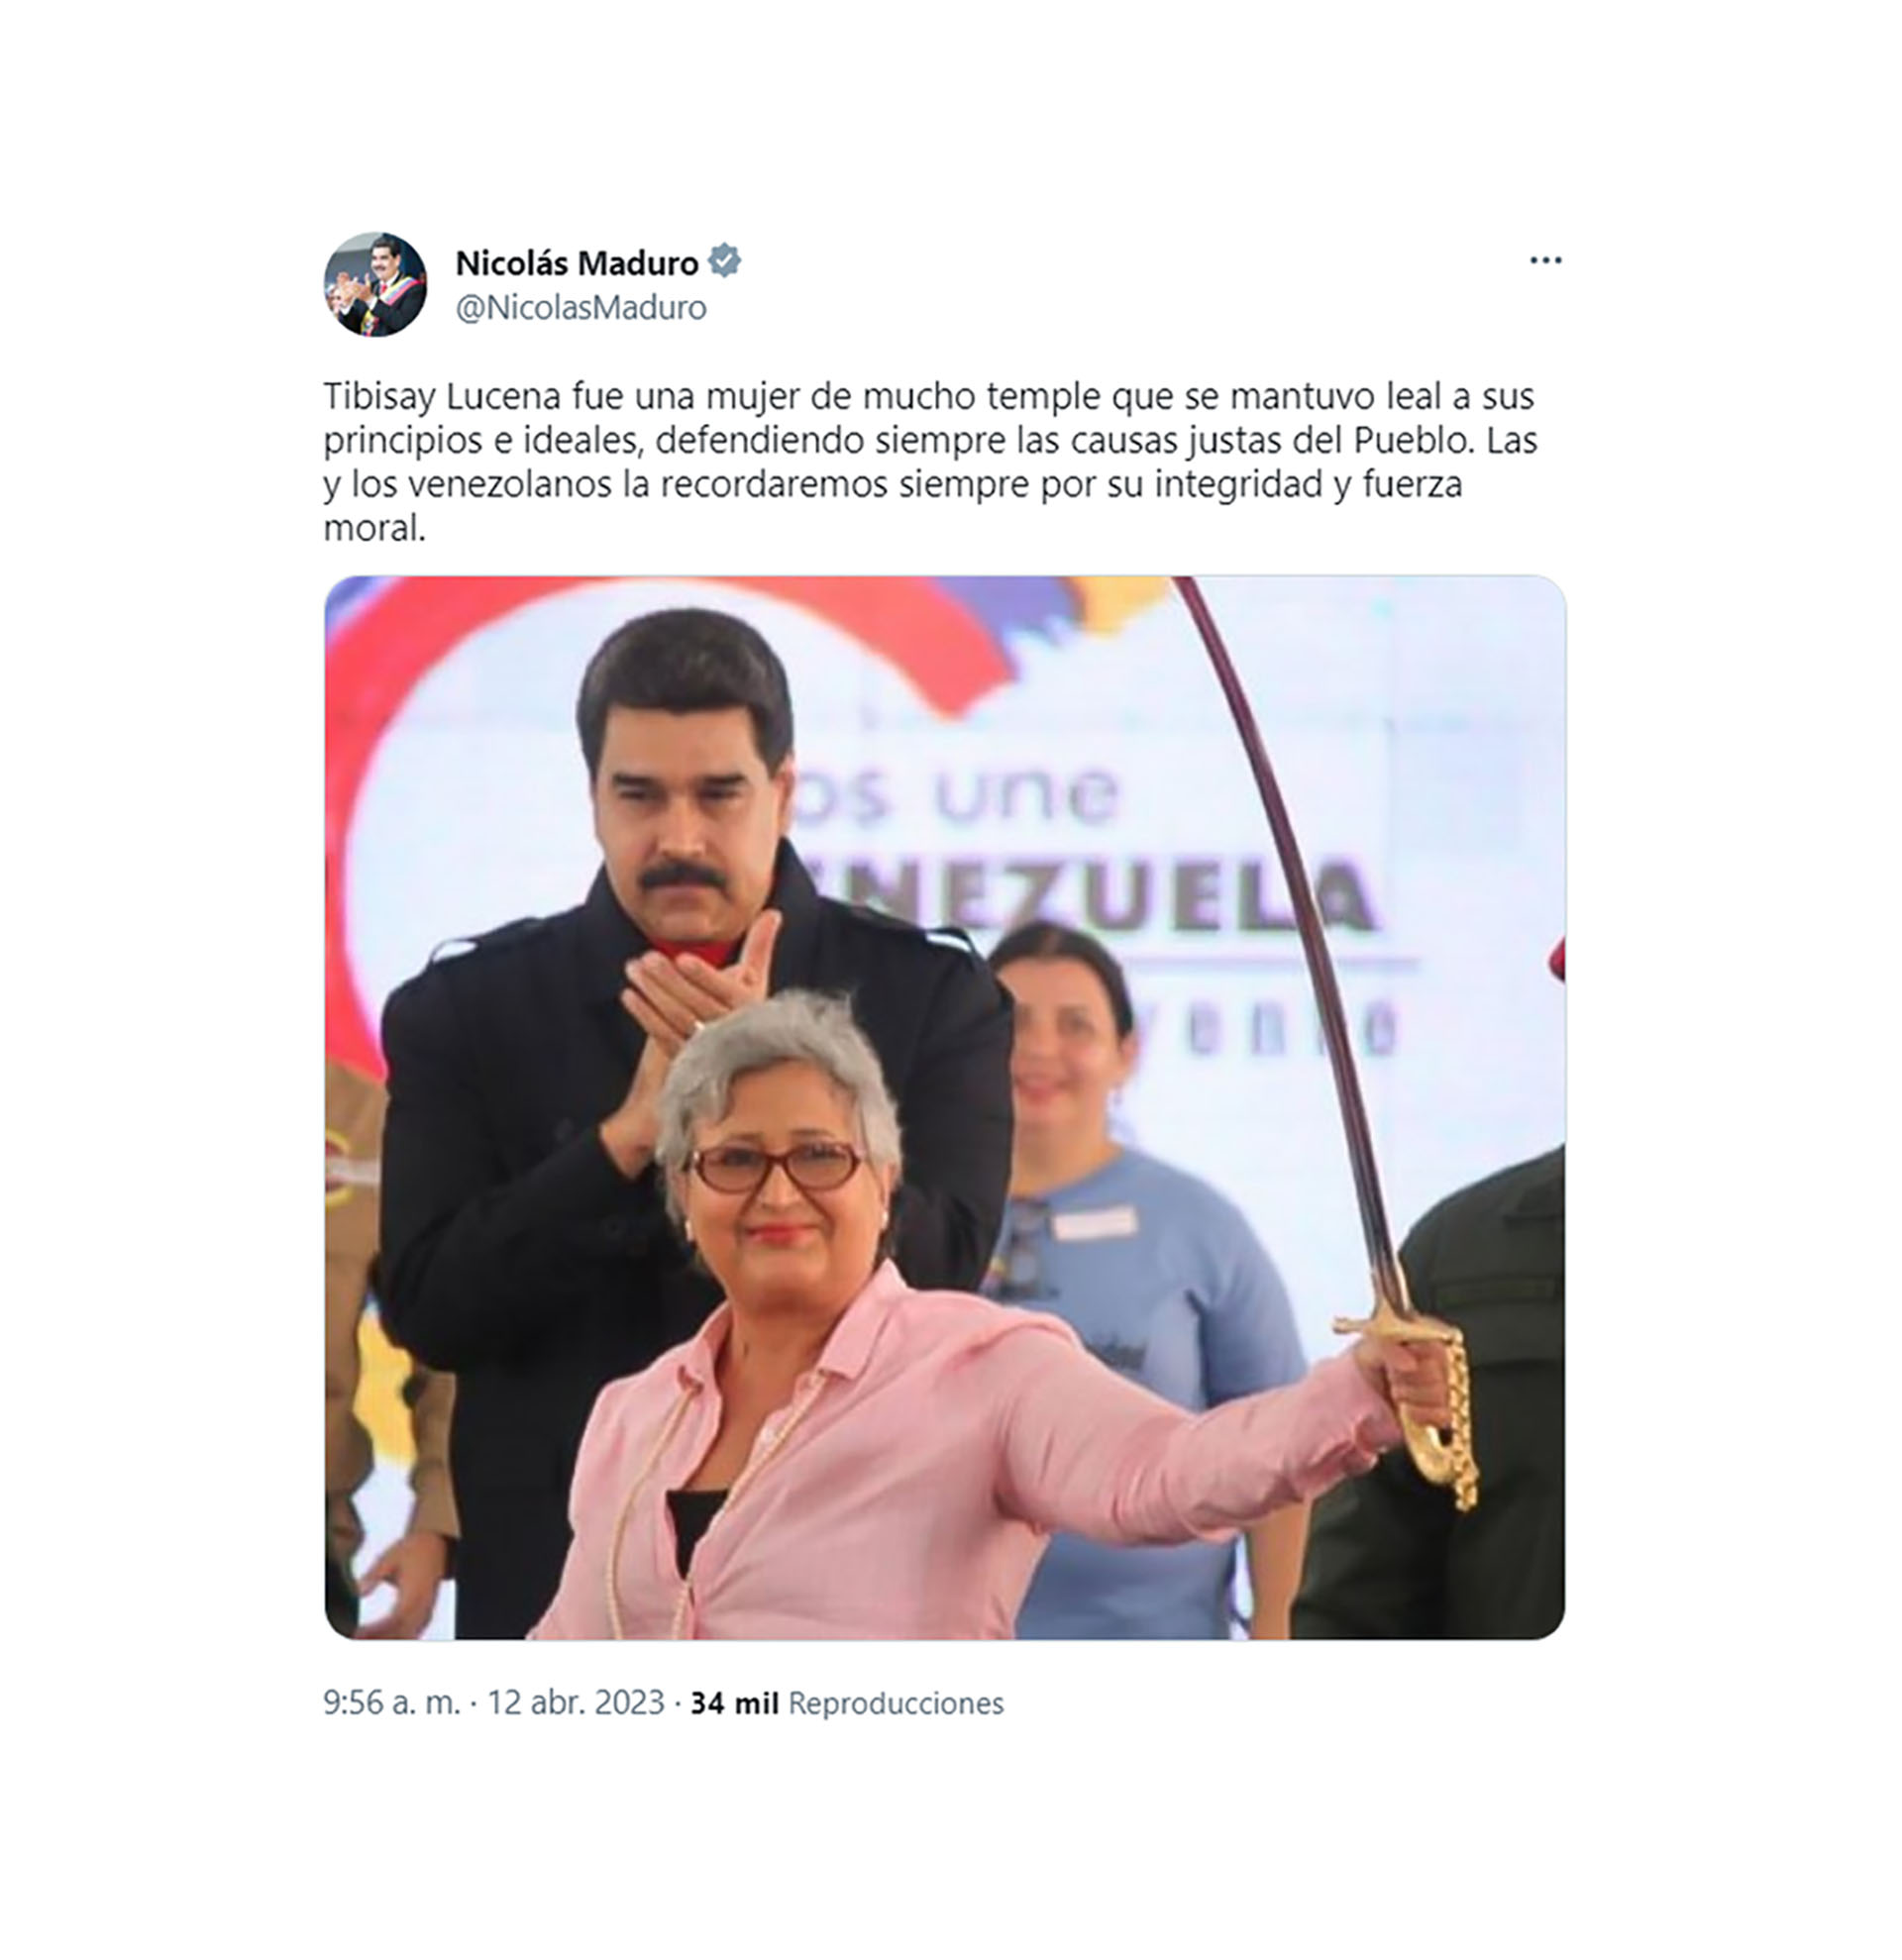 El mensaje de Nicolás Maduro